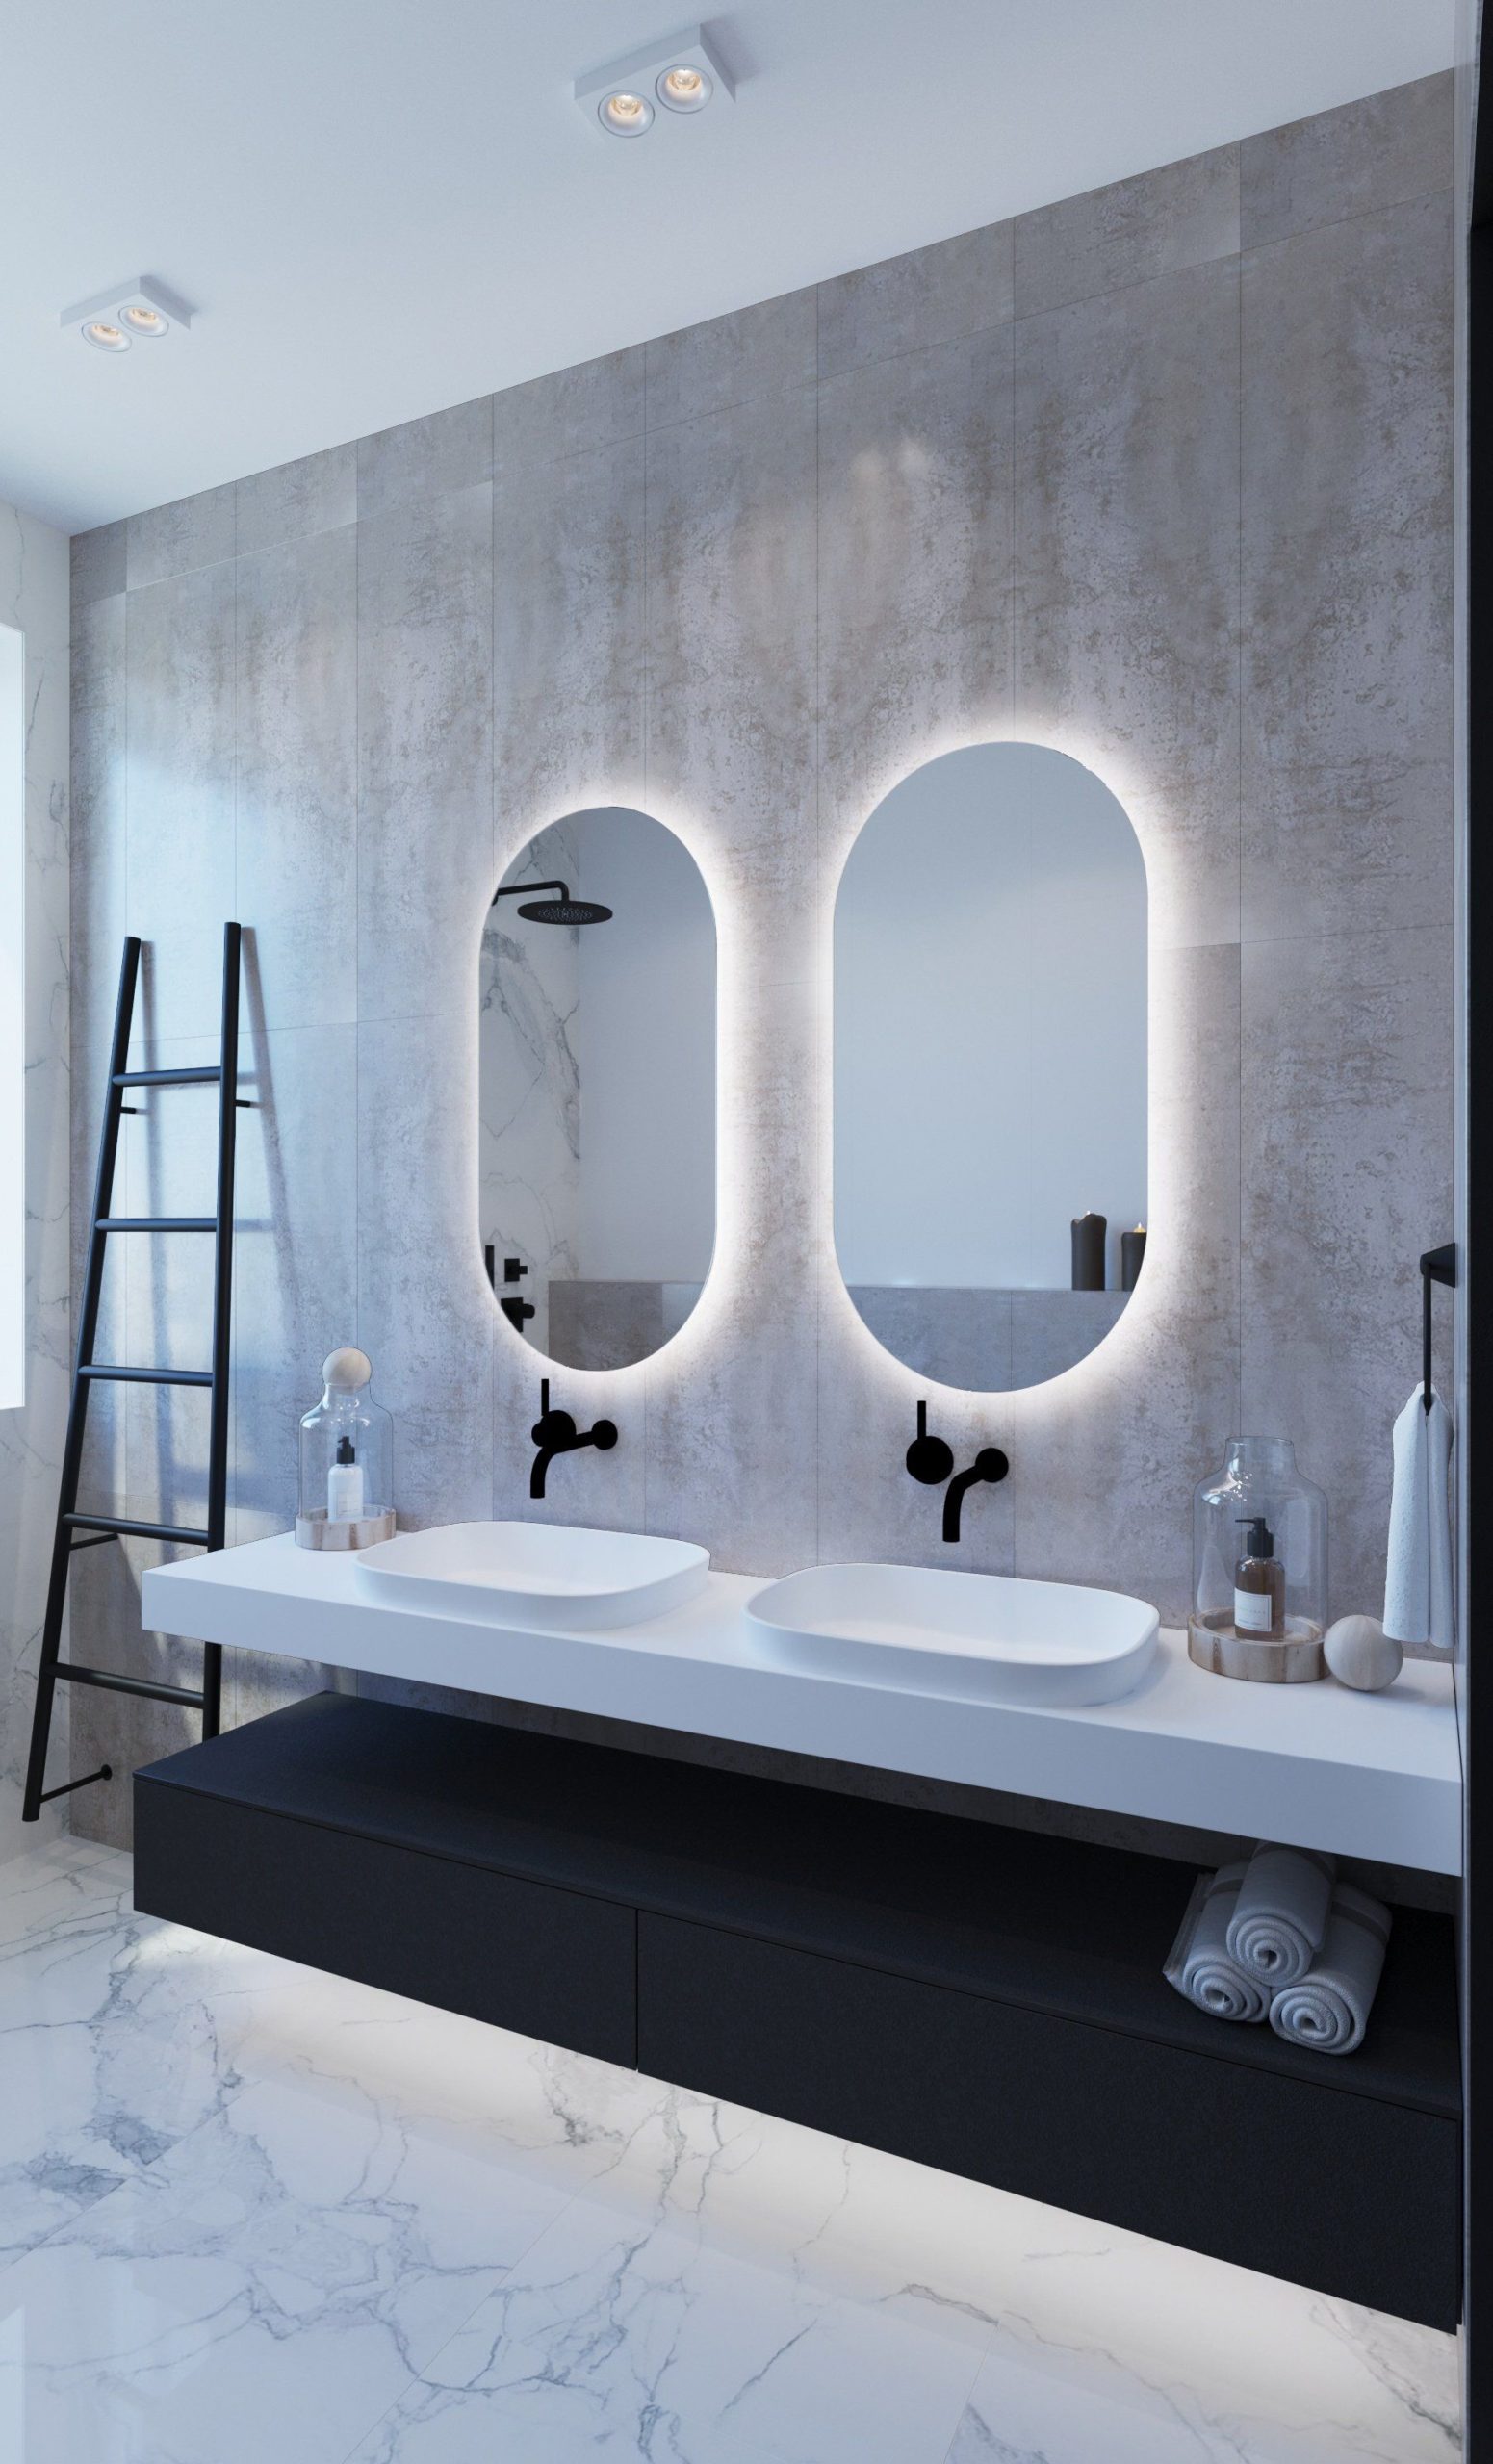 Comment choisir le luminaire de salle de bains parfait?